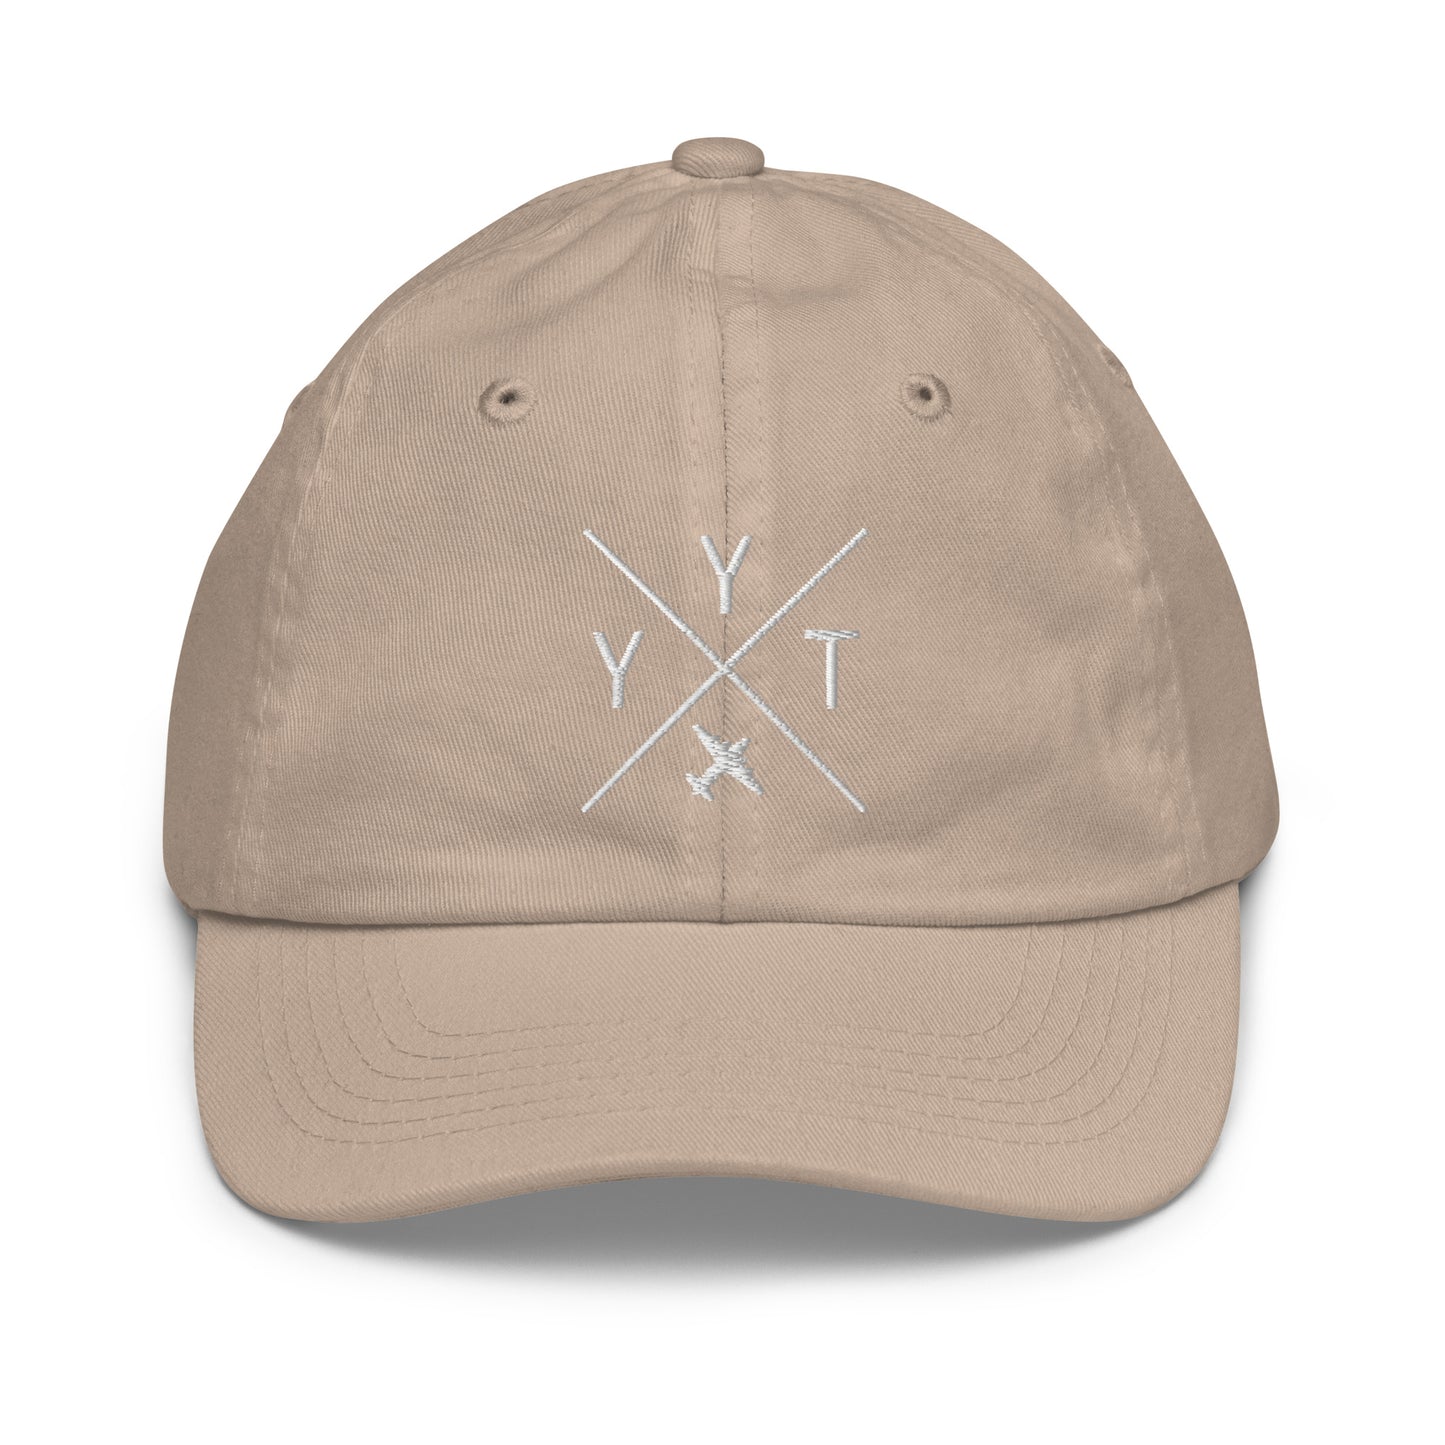 Crossed-X Kid's Baseball Cap - White • YYT St. John's • YHM Designs - Image 28